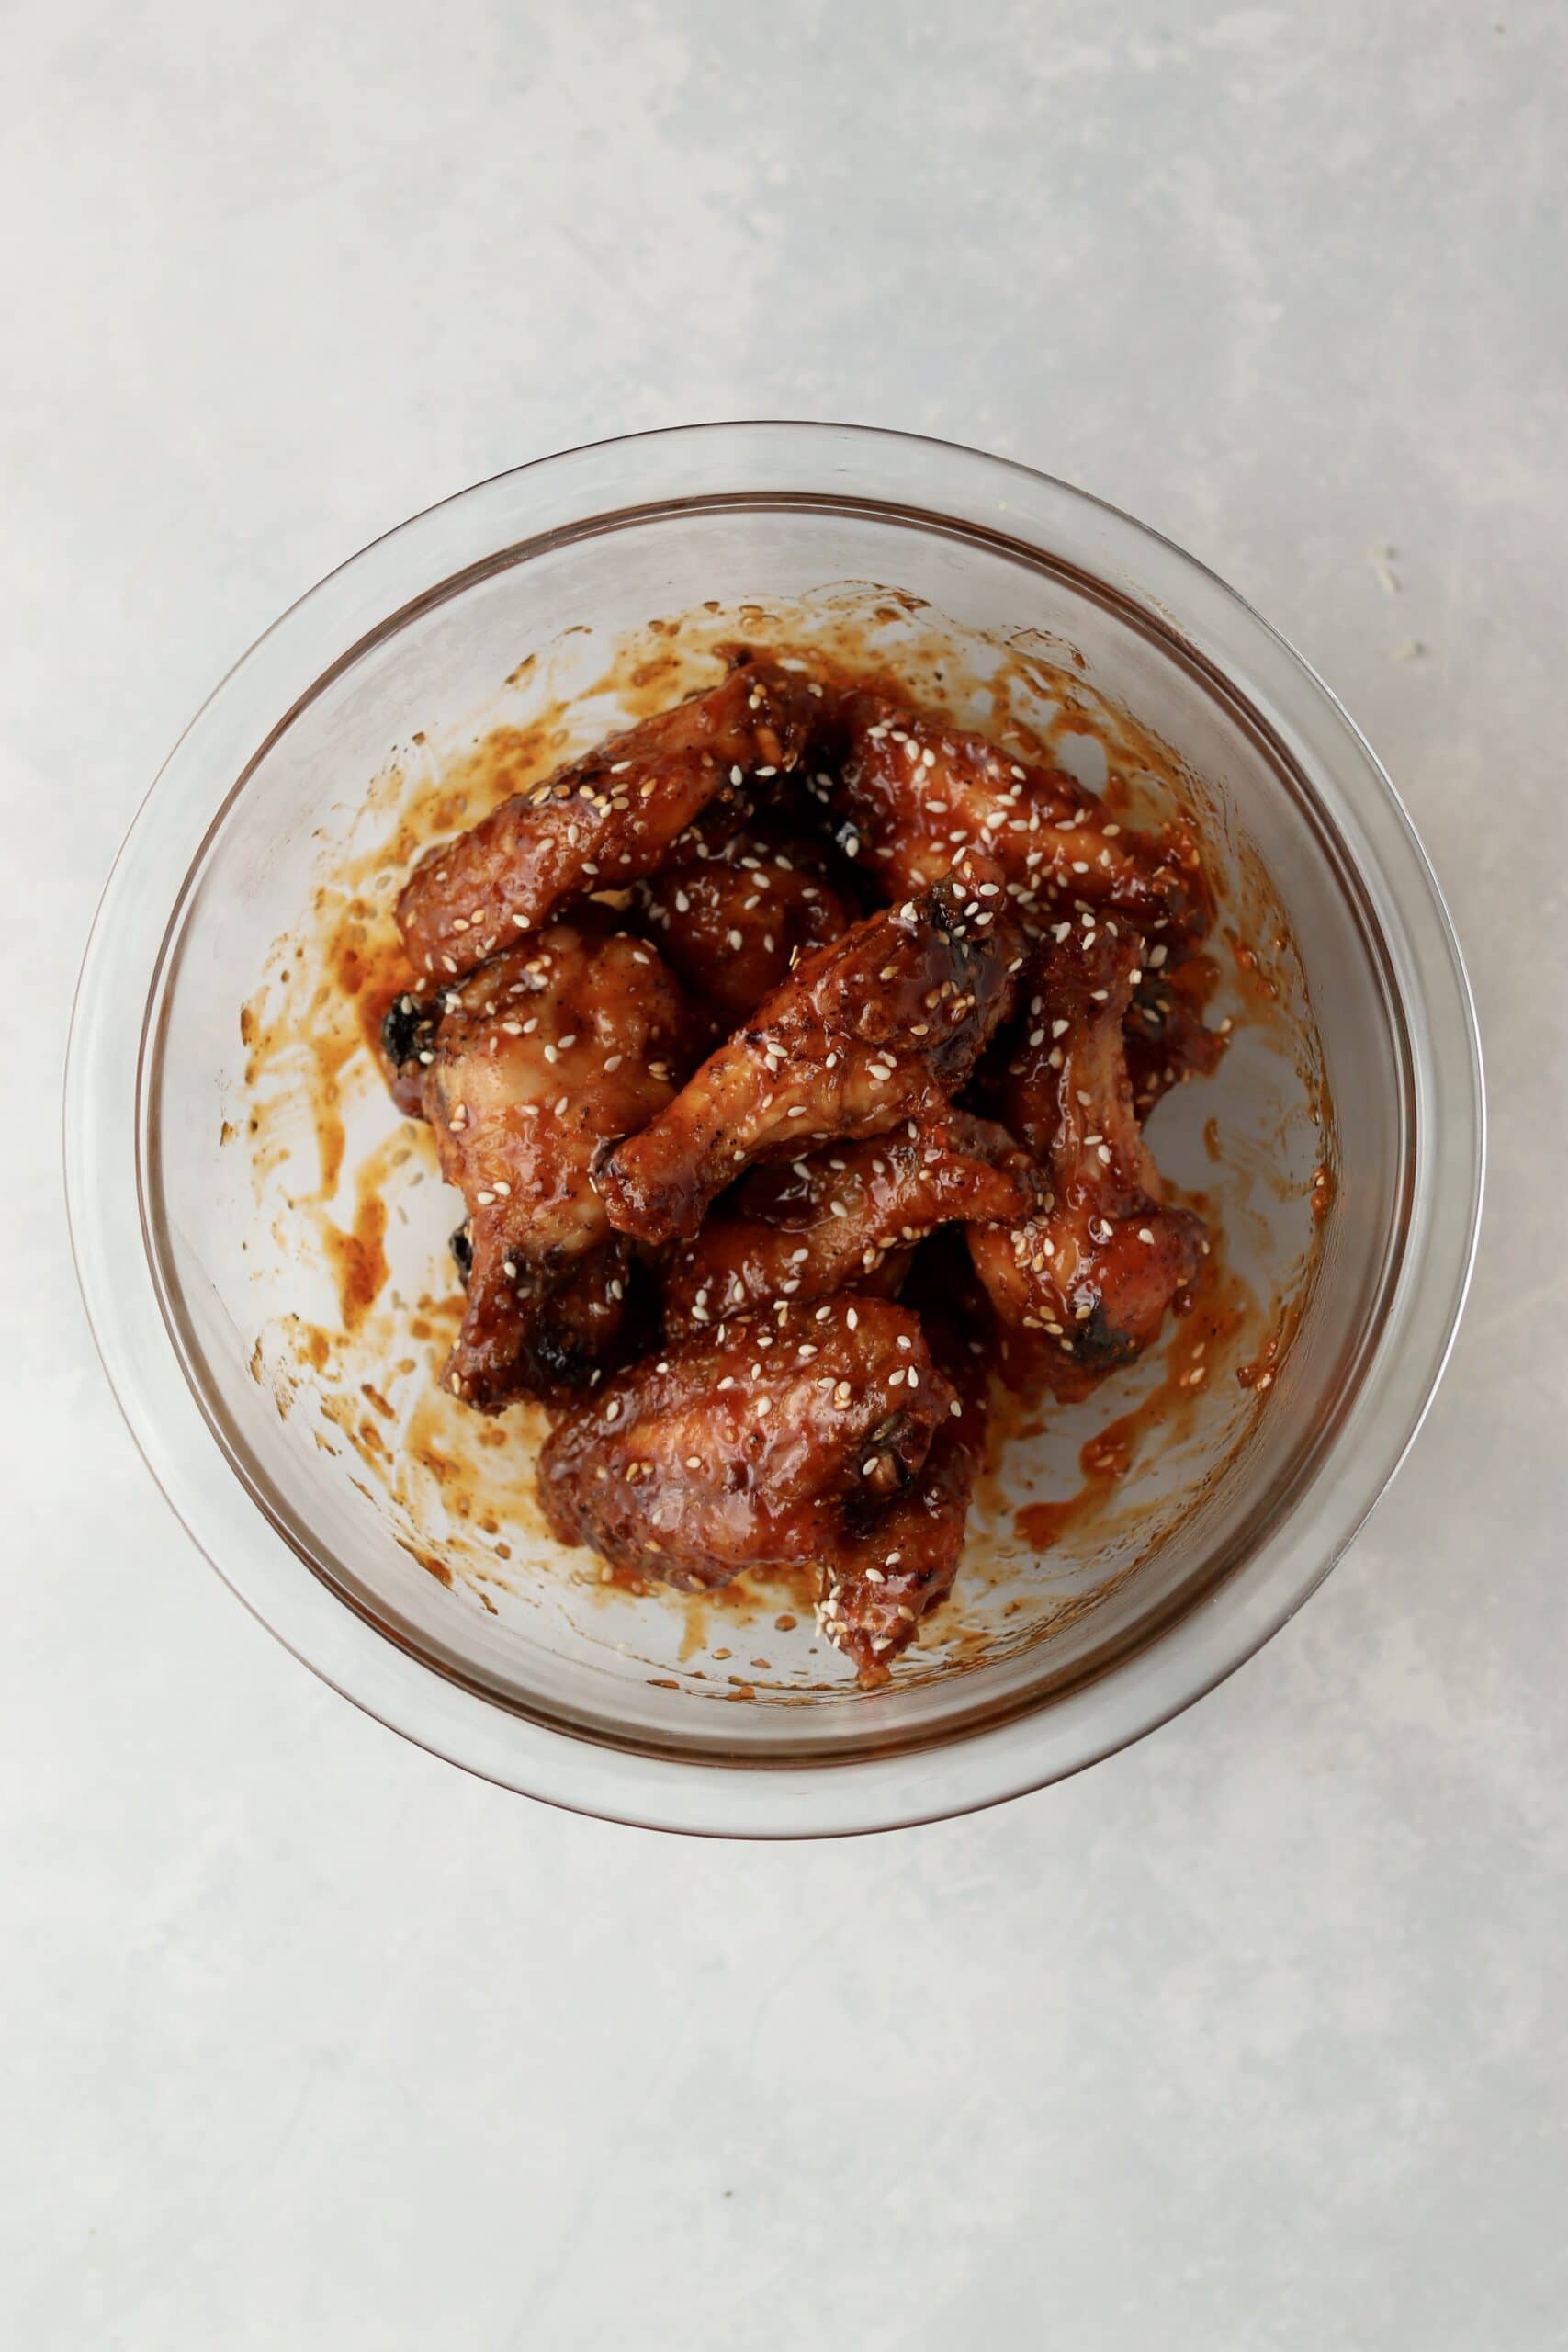 baked Korean chicken wings in bowl